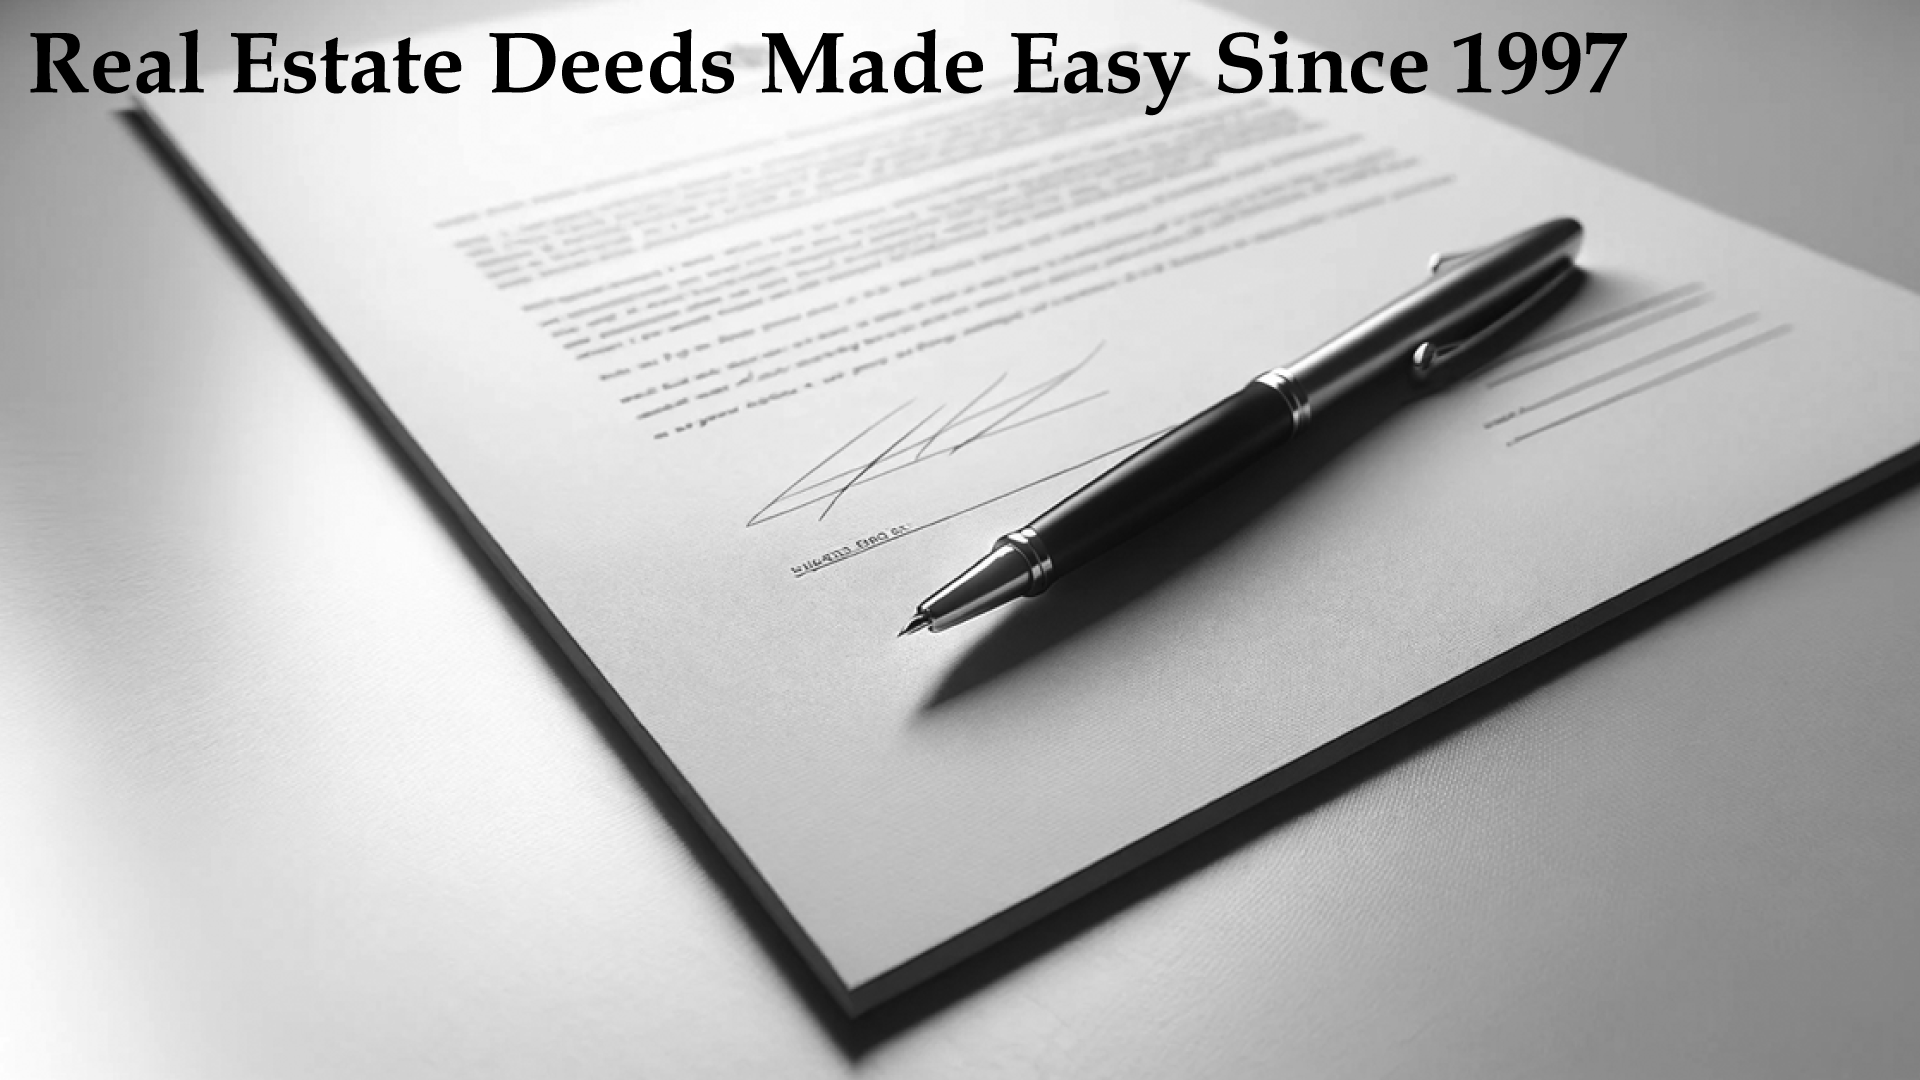 Deeds.com Real Estate Deeds Made Easy Since 1997.